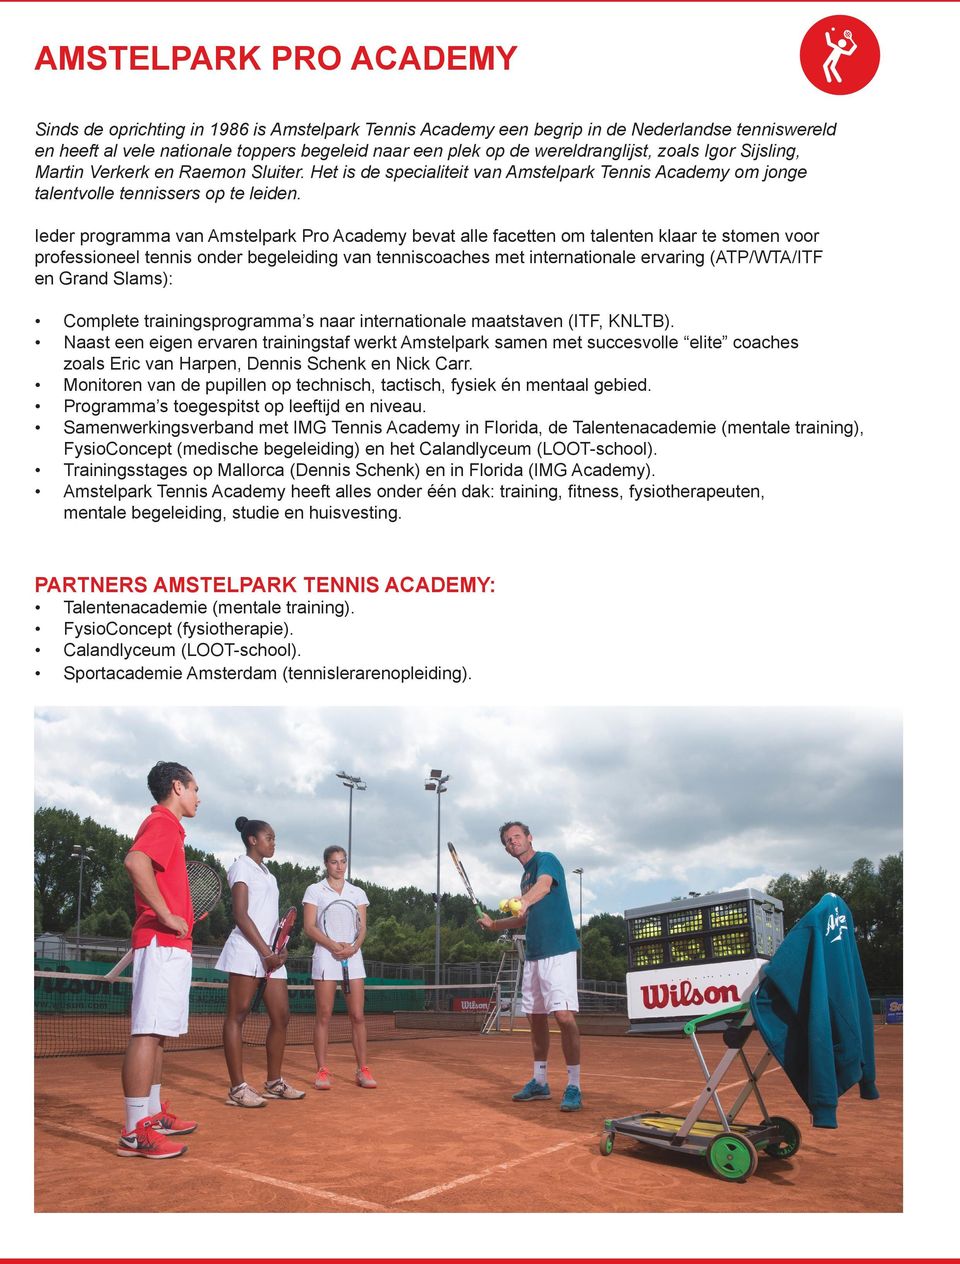 Ieder programma van Amstelpark Pro Academy bevat alle facetten om talenten klaar te stomen voor professioneel tennis onder begeleiding van tenniscoaches met internationale ervaring (ATP/WTA/ITF en